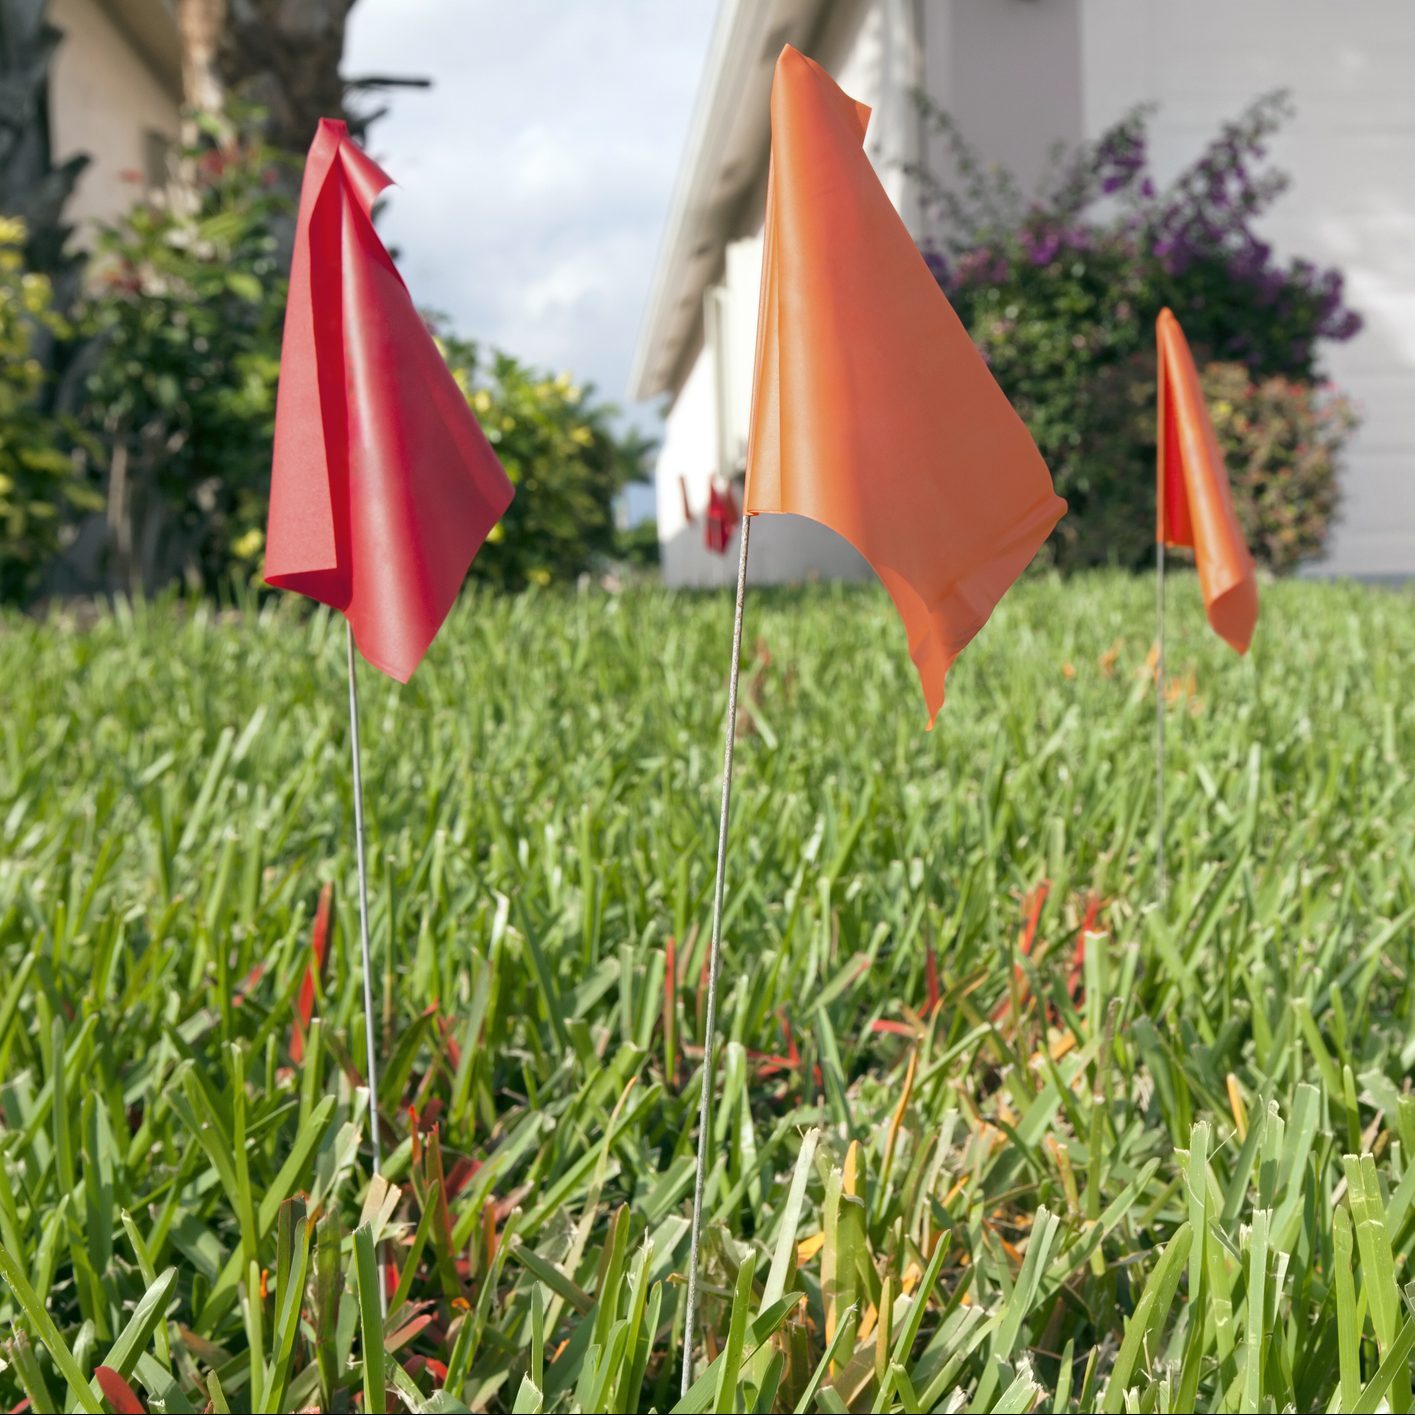 Lawn fertiliser markers